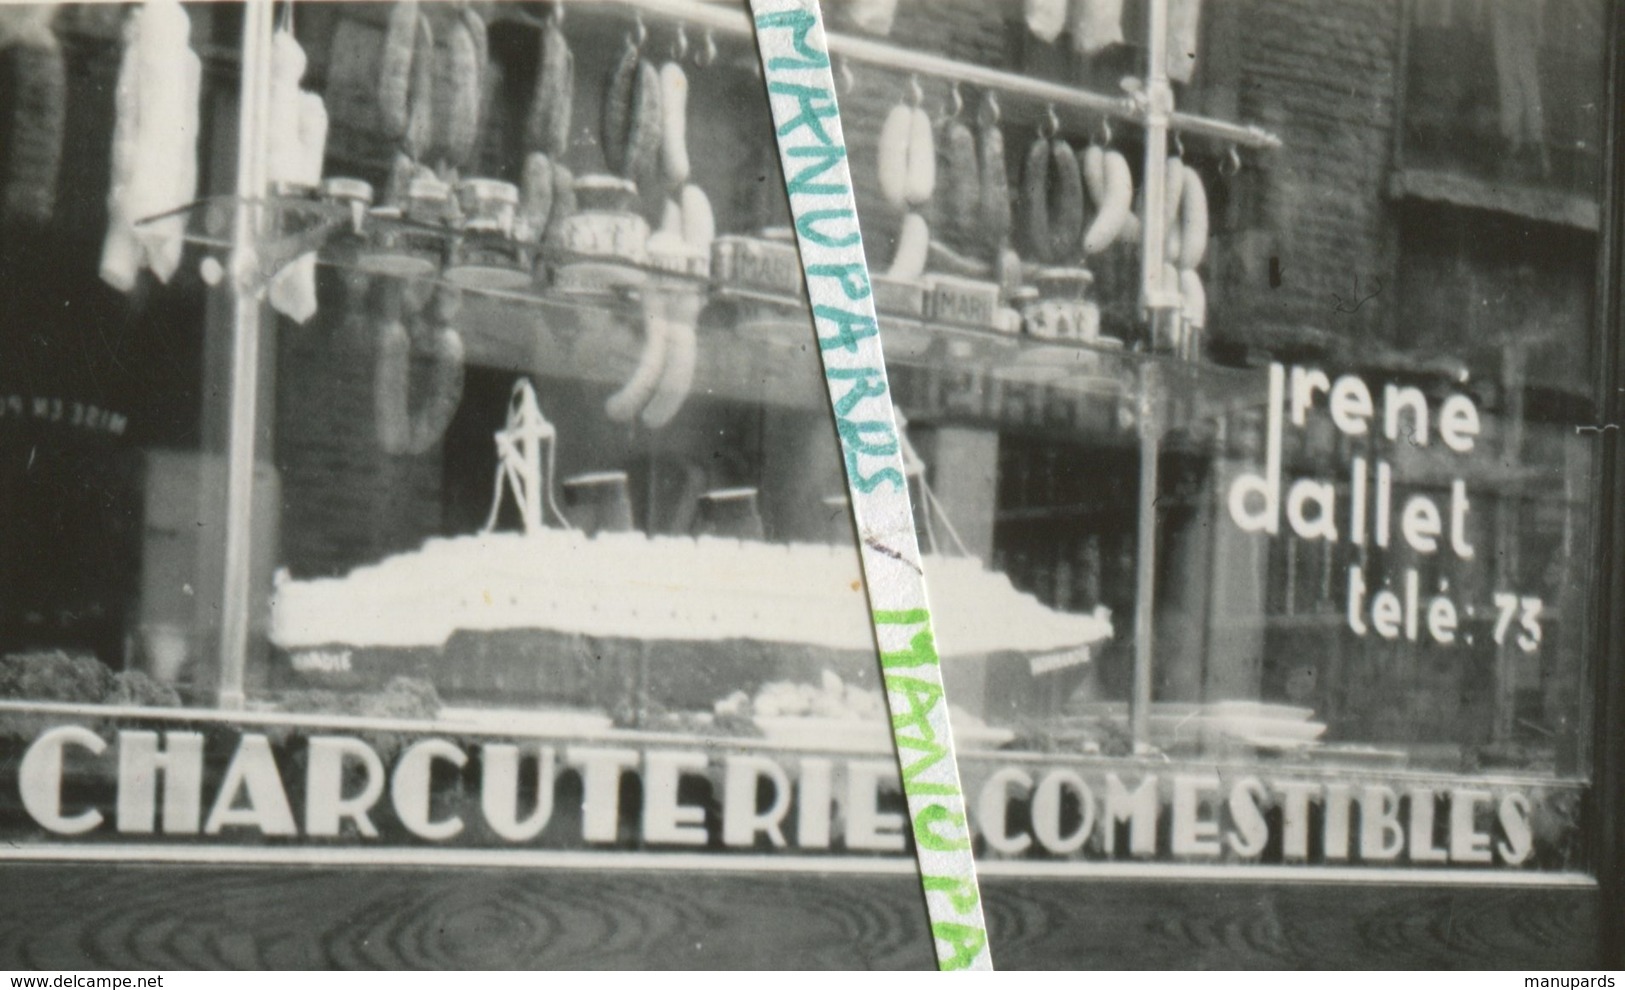 76 SAINT VALERY EN CAUX ??? 2 PHOTOS / 1945 - 1965 / CHARCUTERIE ROUENNAISE DALLET / OLIDA / MAQUETTE PAQUEBOT NORMANDIE - Saint Valery En Caux